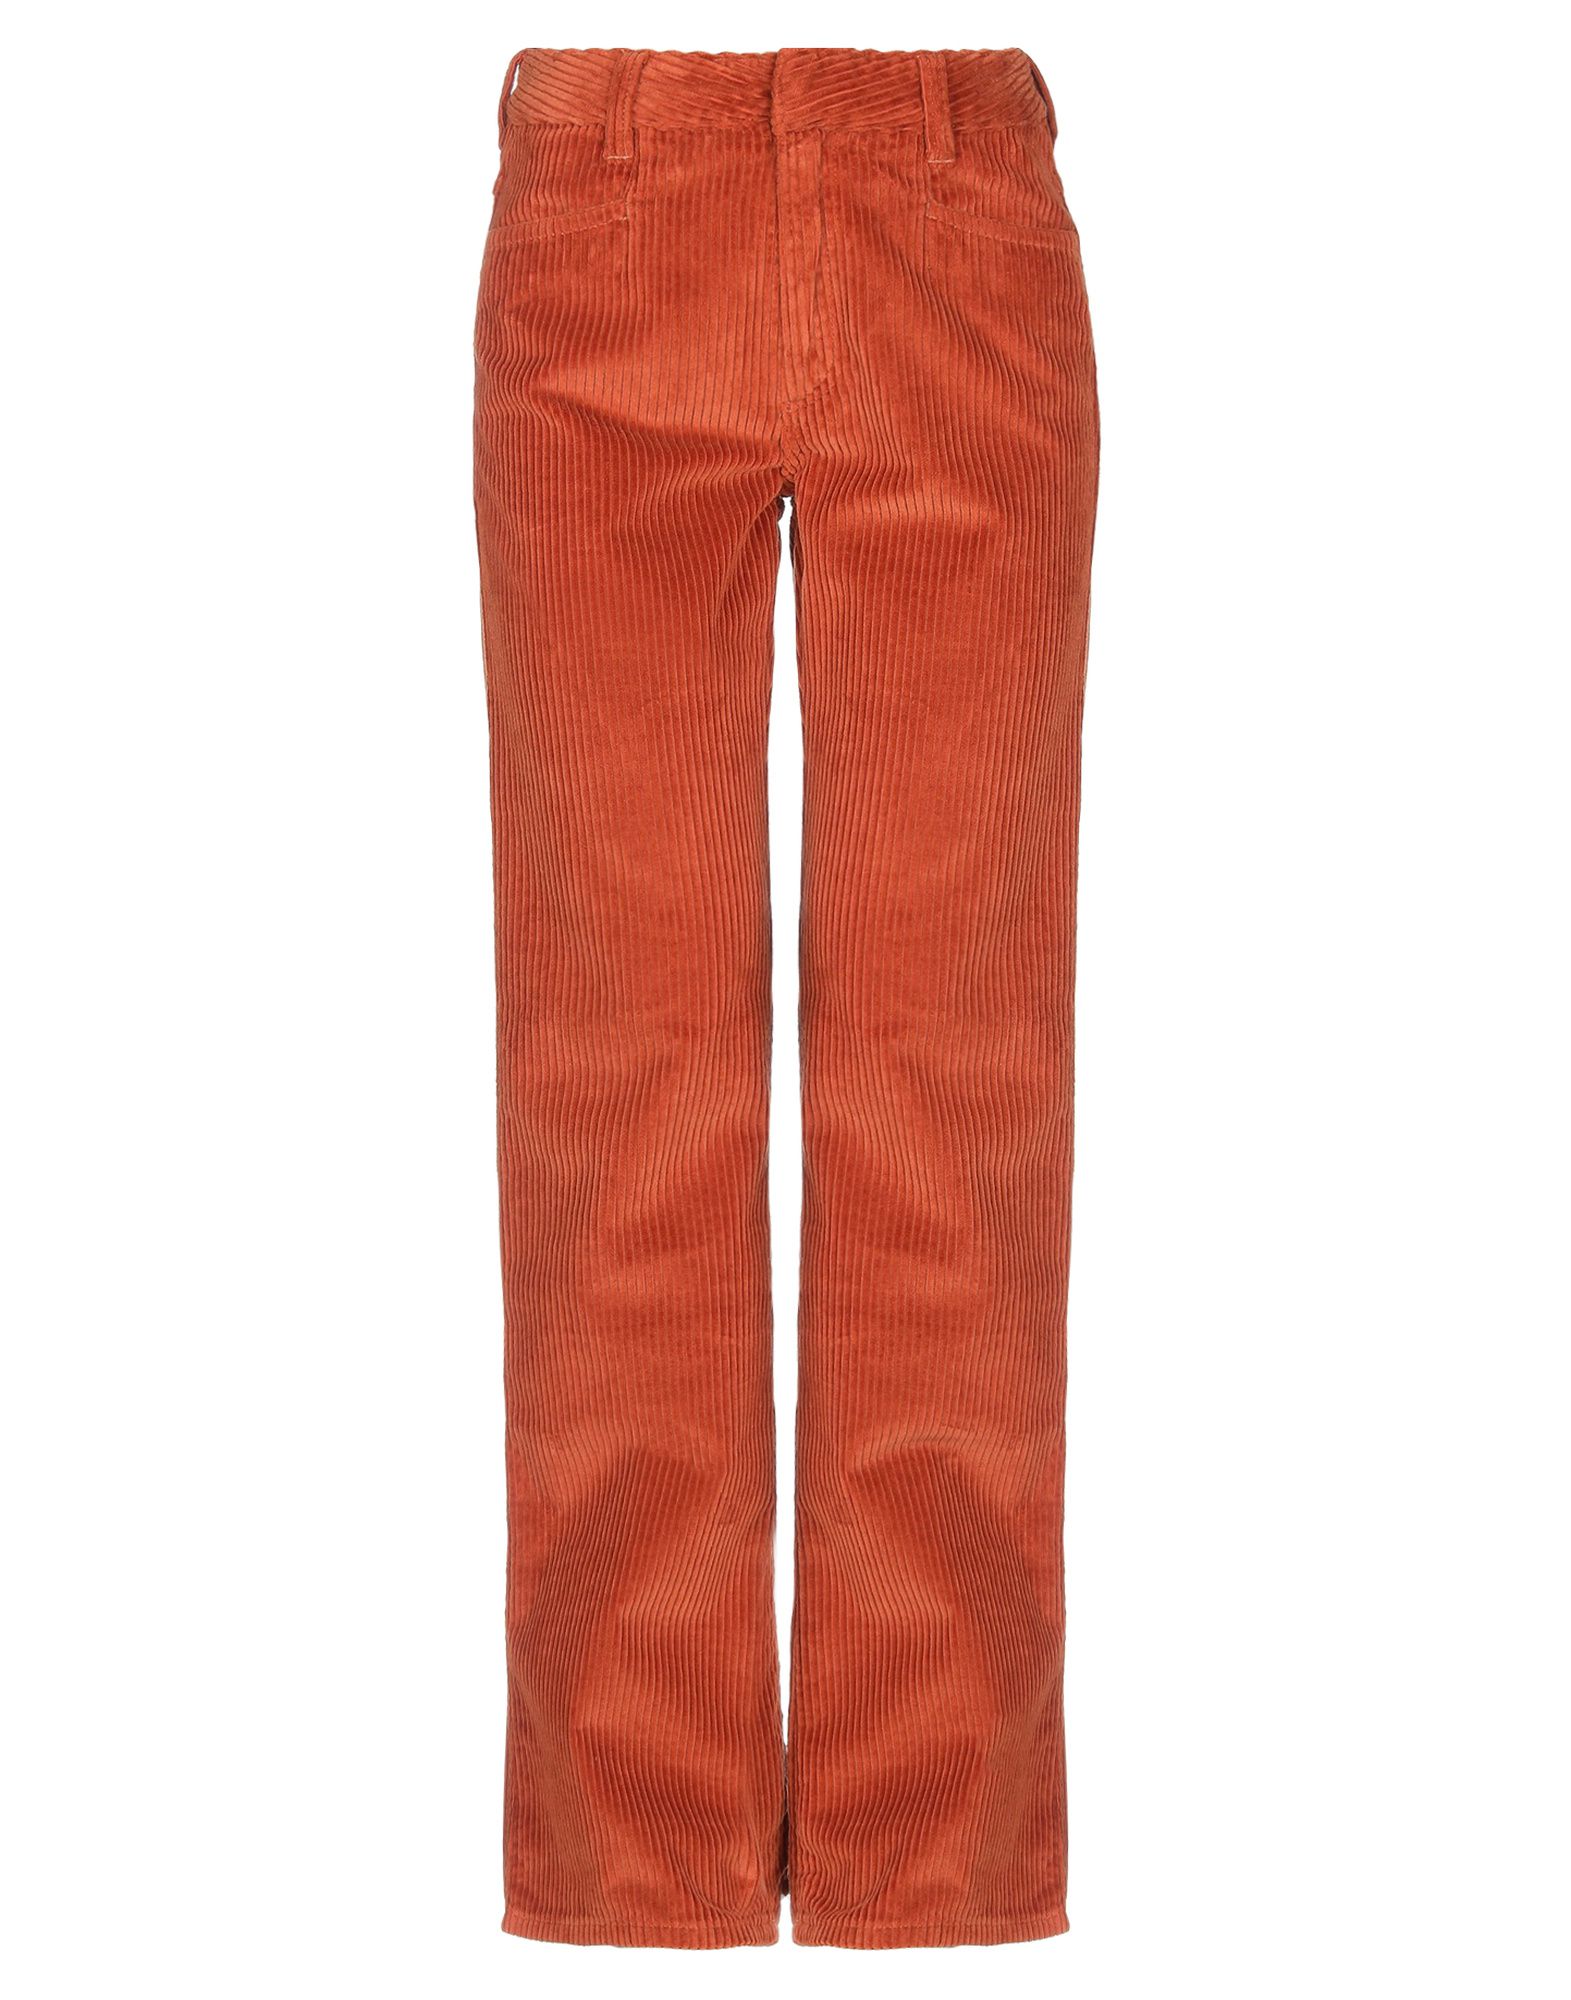 Повседневные брюки  - Коричневый цвет